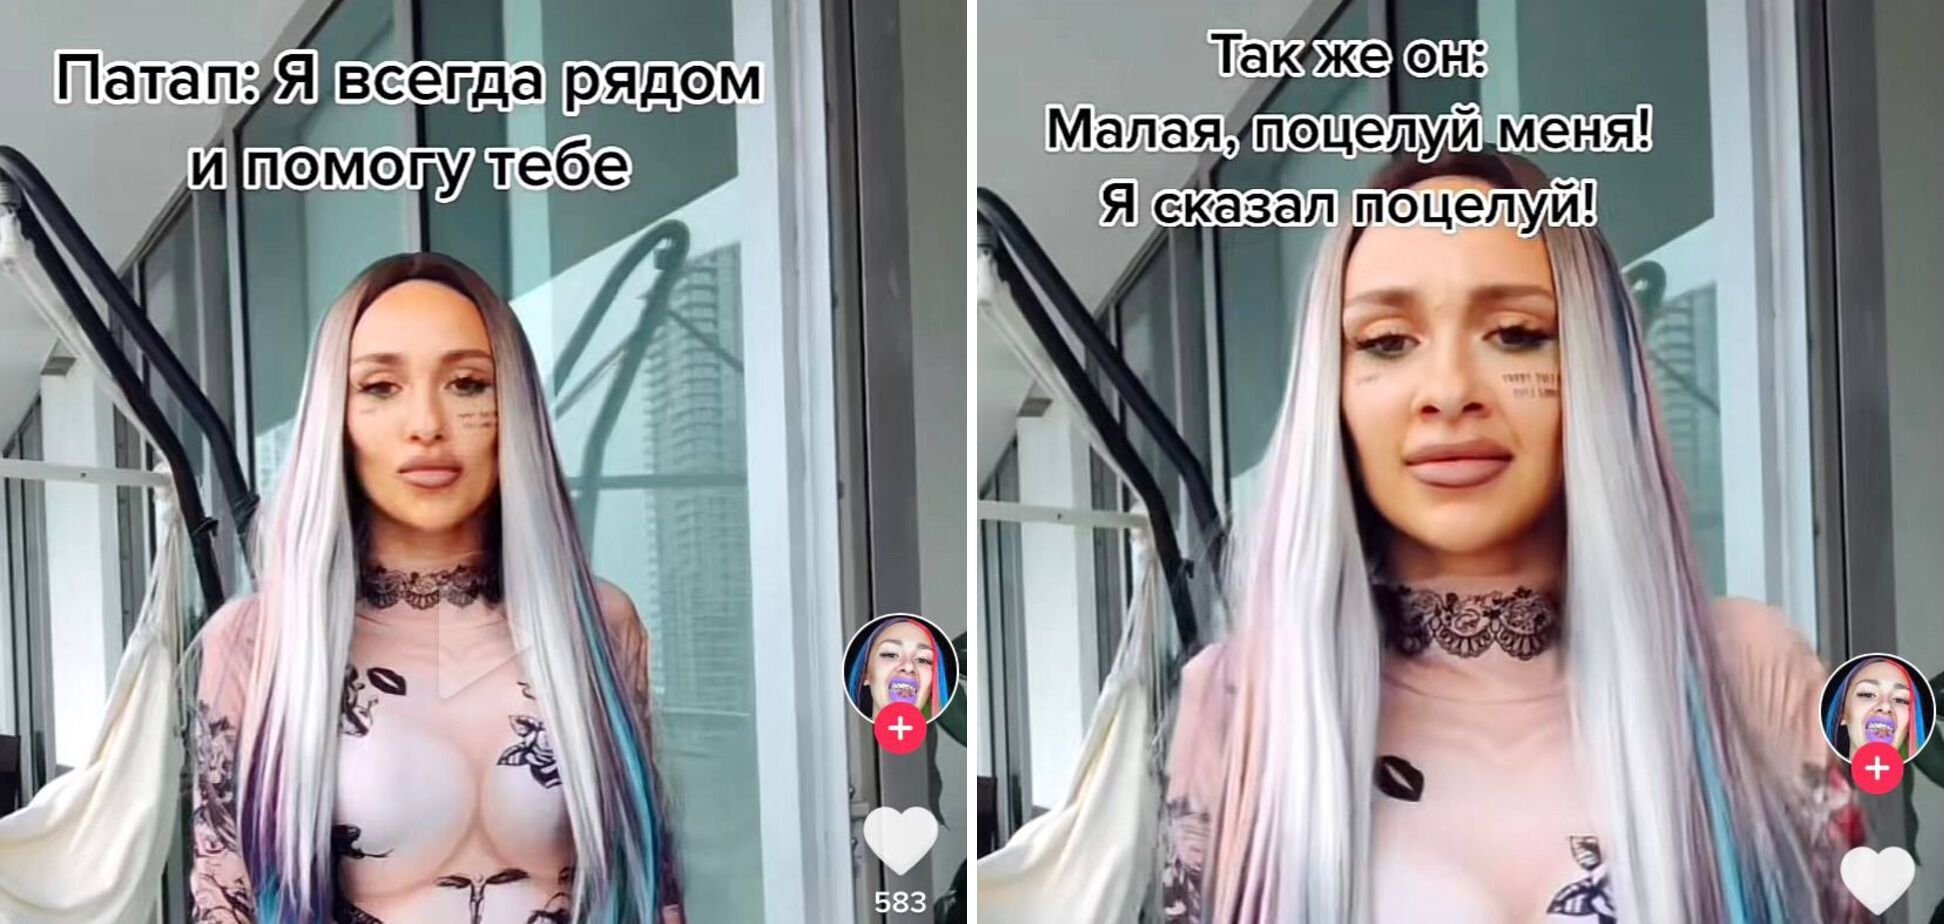 Украинская певица обвинила Потапа в неверности Каменских и недвусмысленных намеках на интим: детали скандала